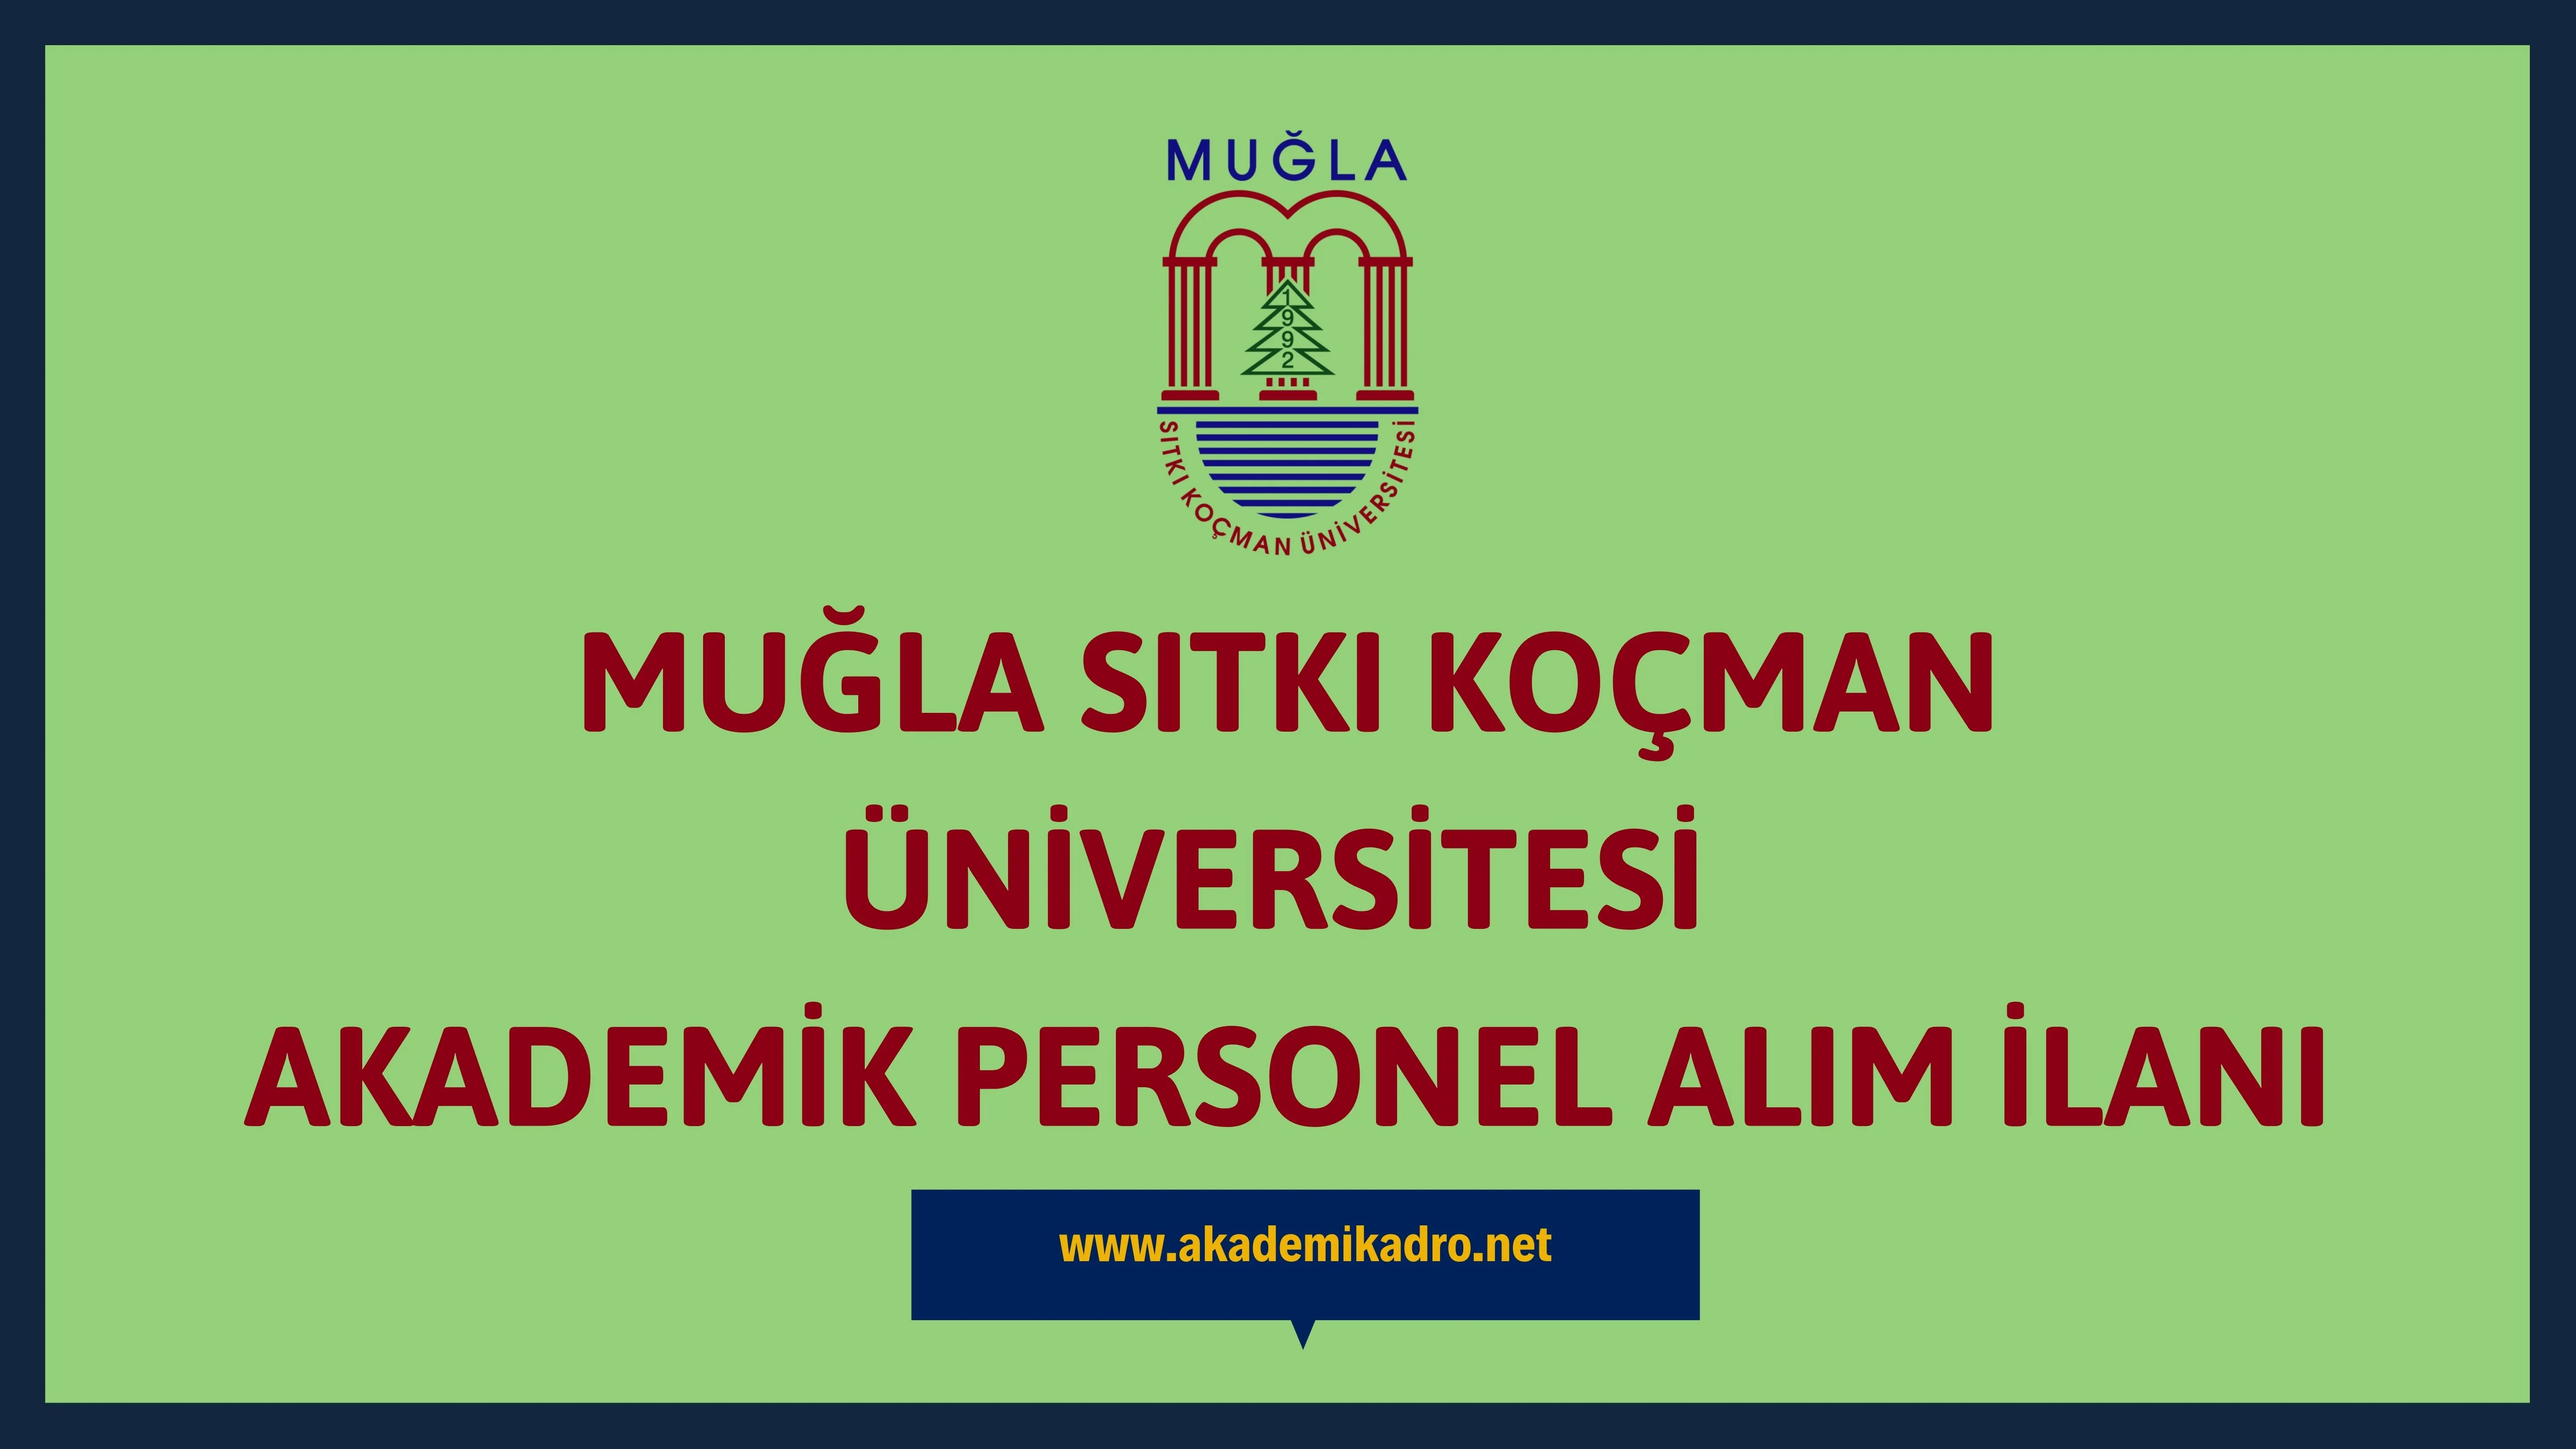 Muğla Sıtkı Koçman Üniversitesi çeşitli branşlarda 9 akademik personel alacak.